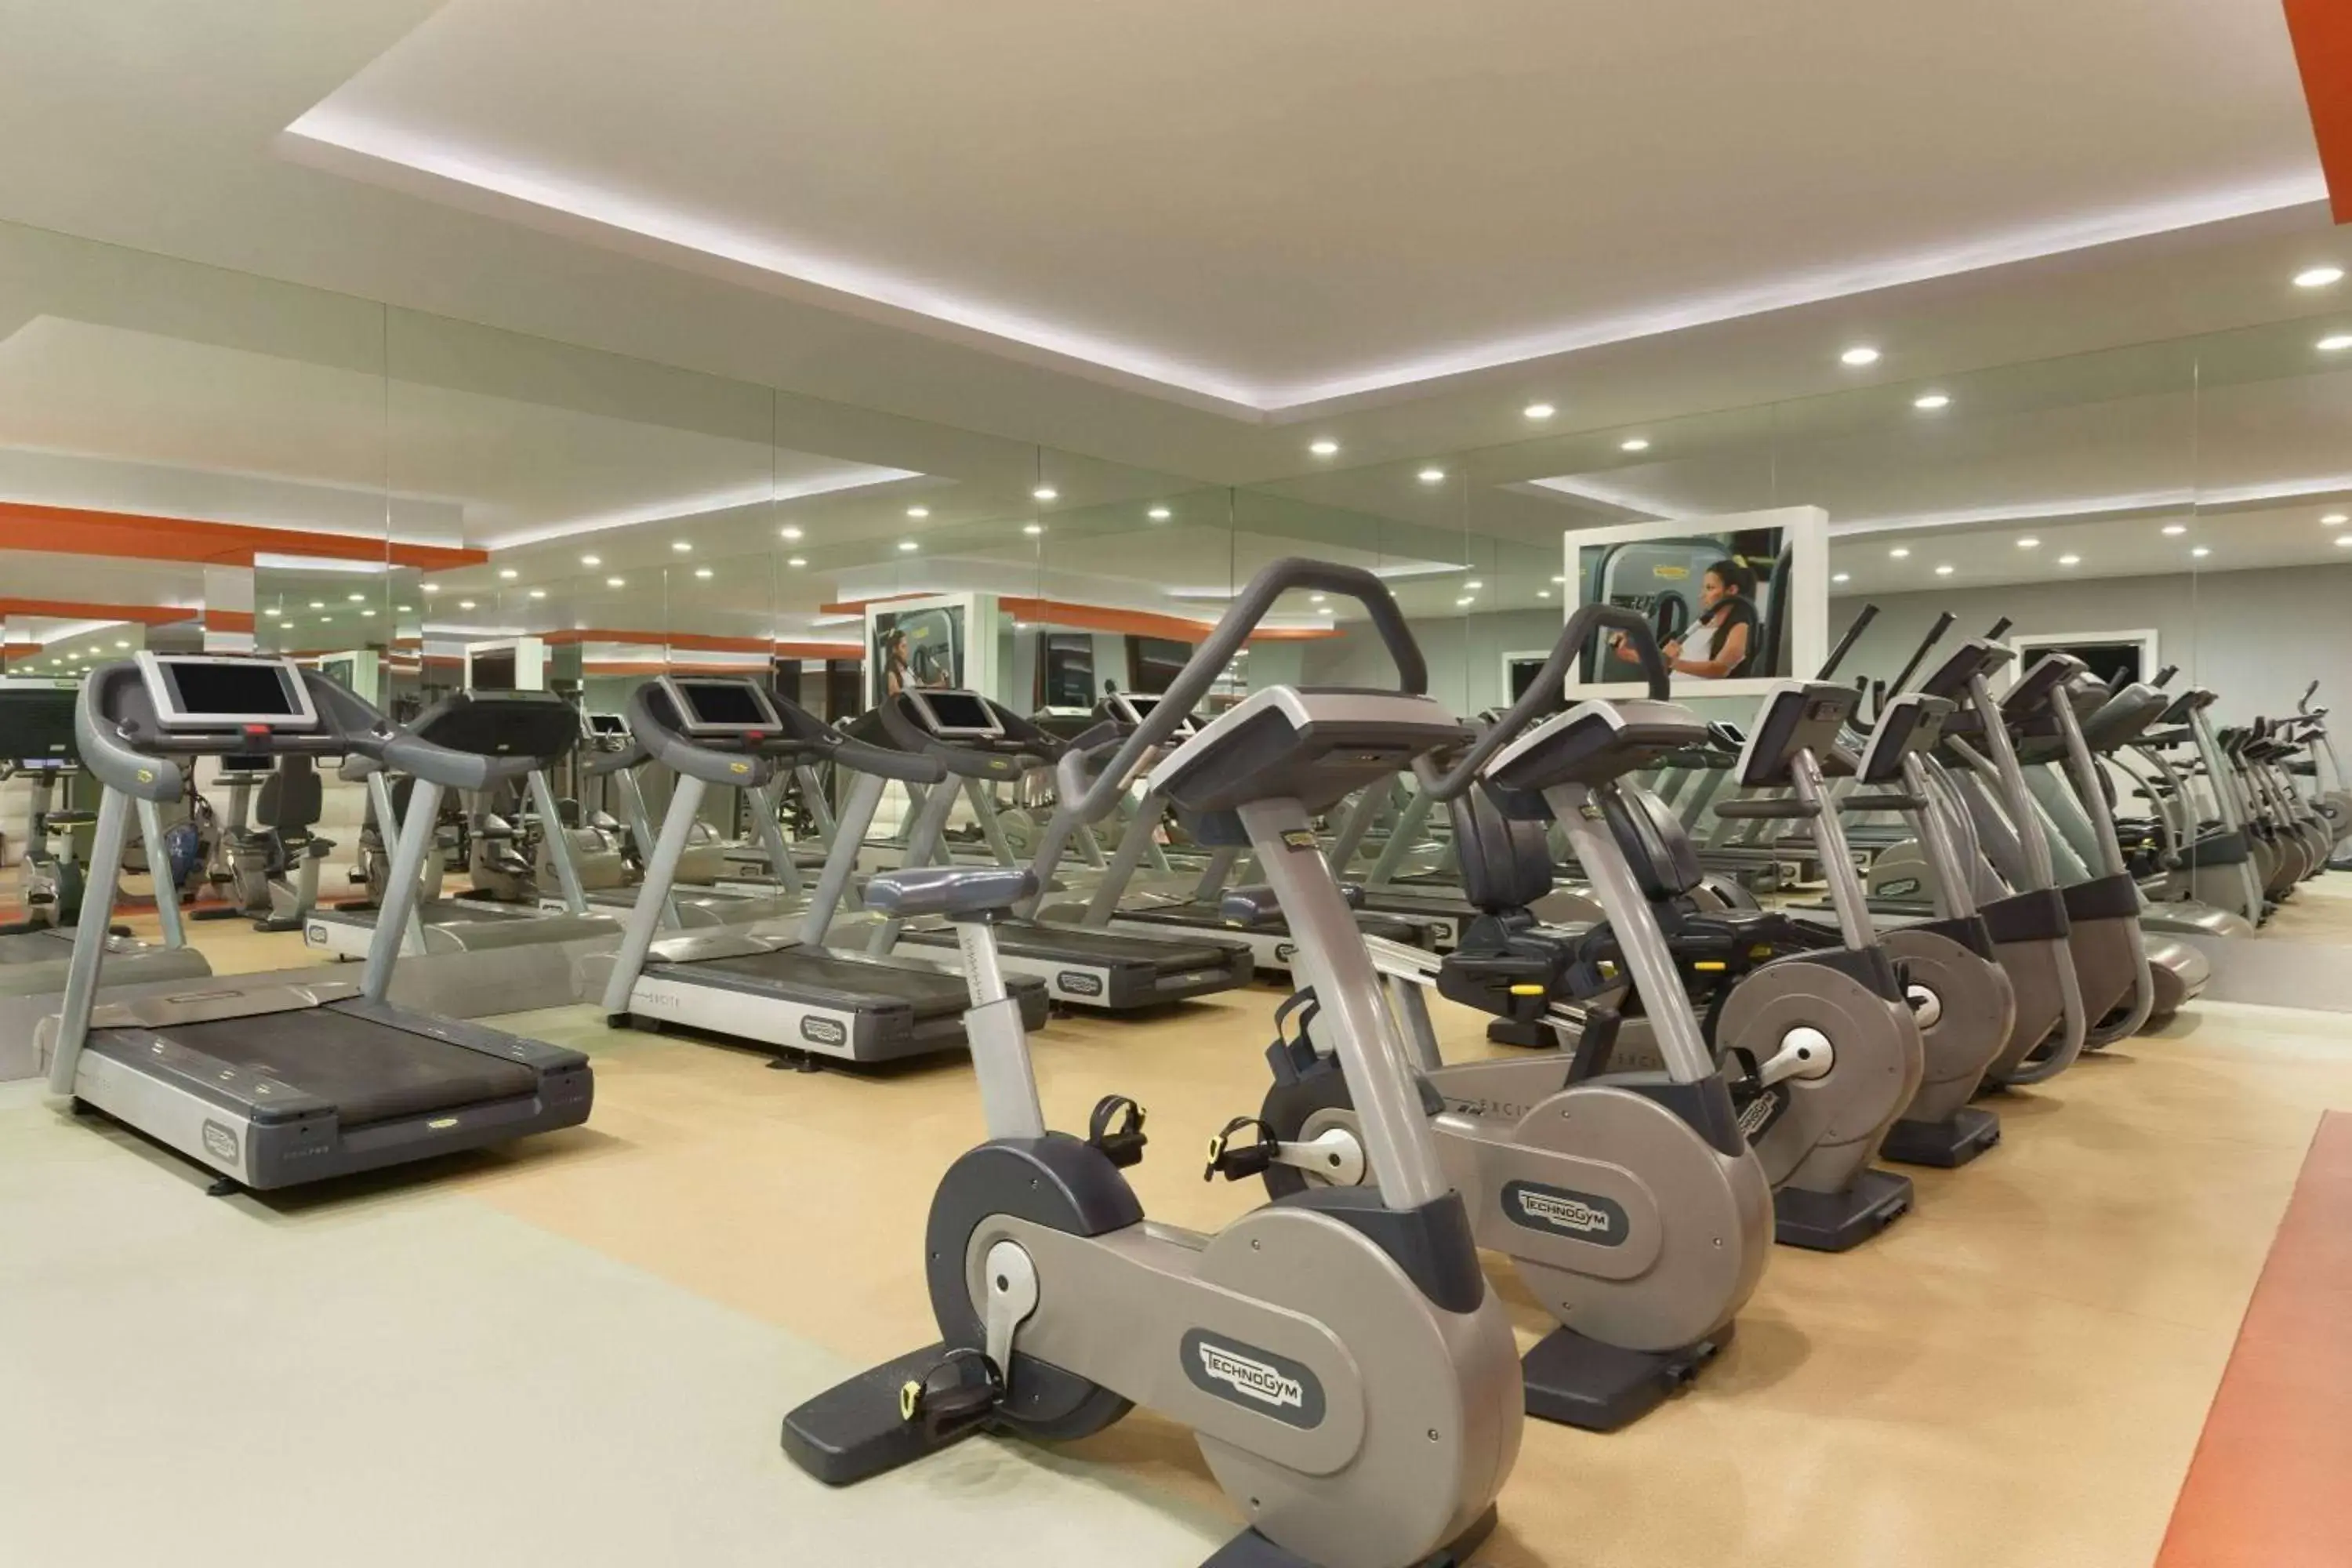 Fitness centre/facilities, Fitness Center/Facilities in Ramada Plaza Antalya